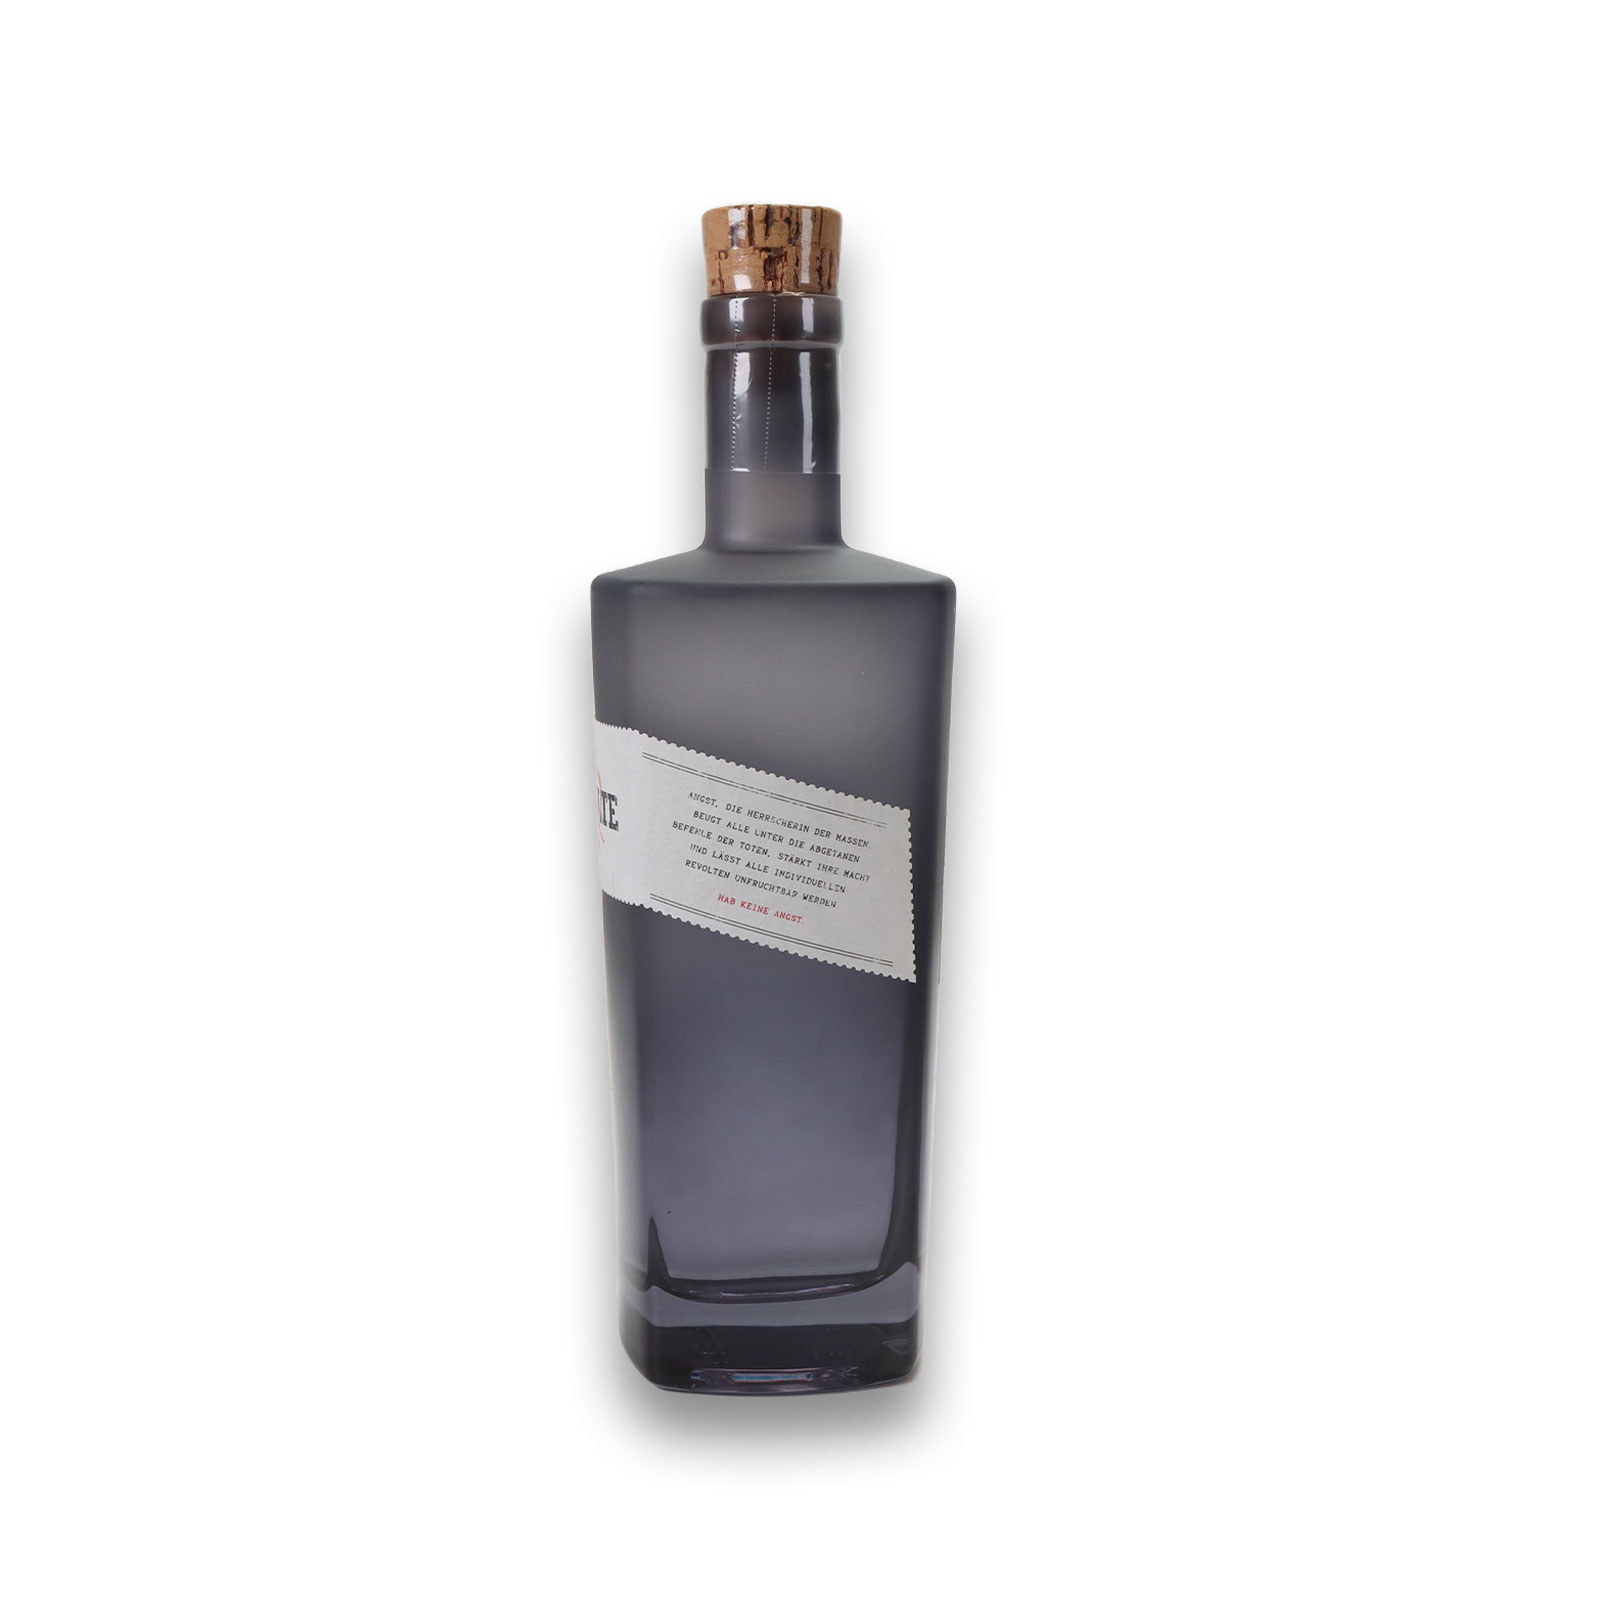 Seitenansicht von dem fruchtig würzigen Revolte Rum mit Spruch auf dem Etikett.